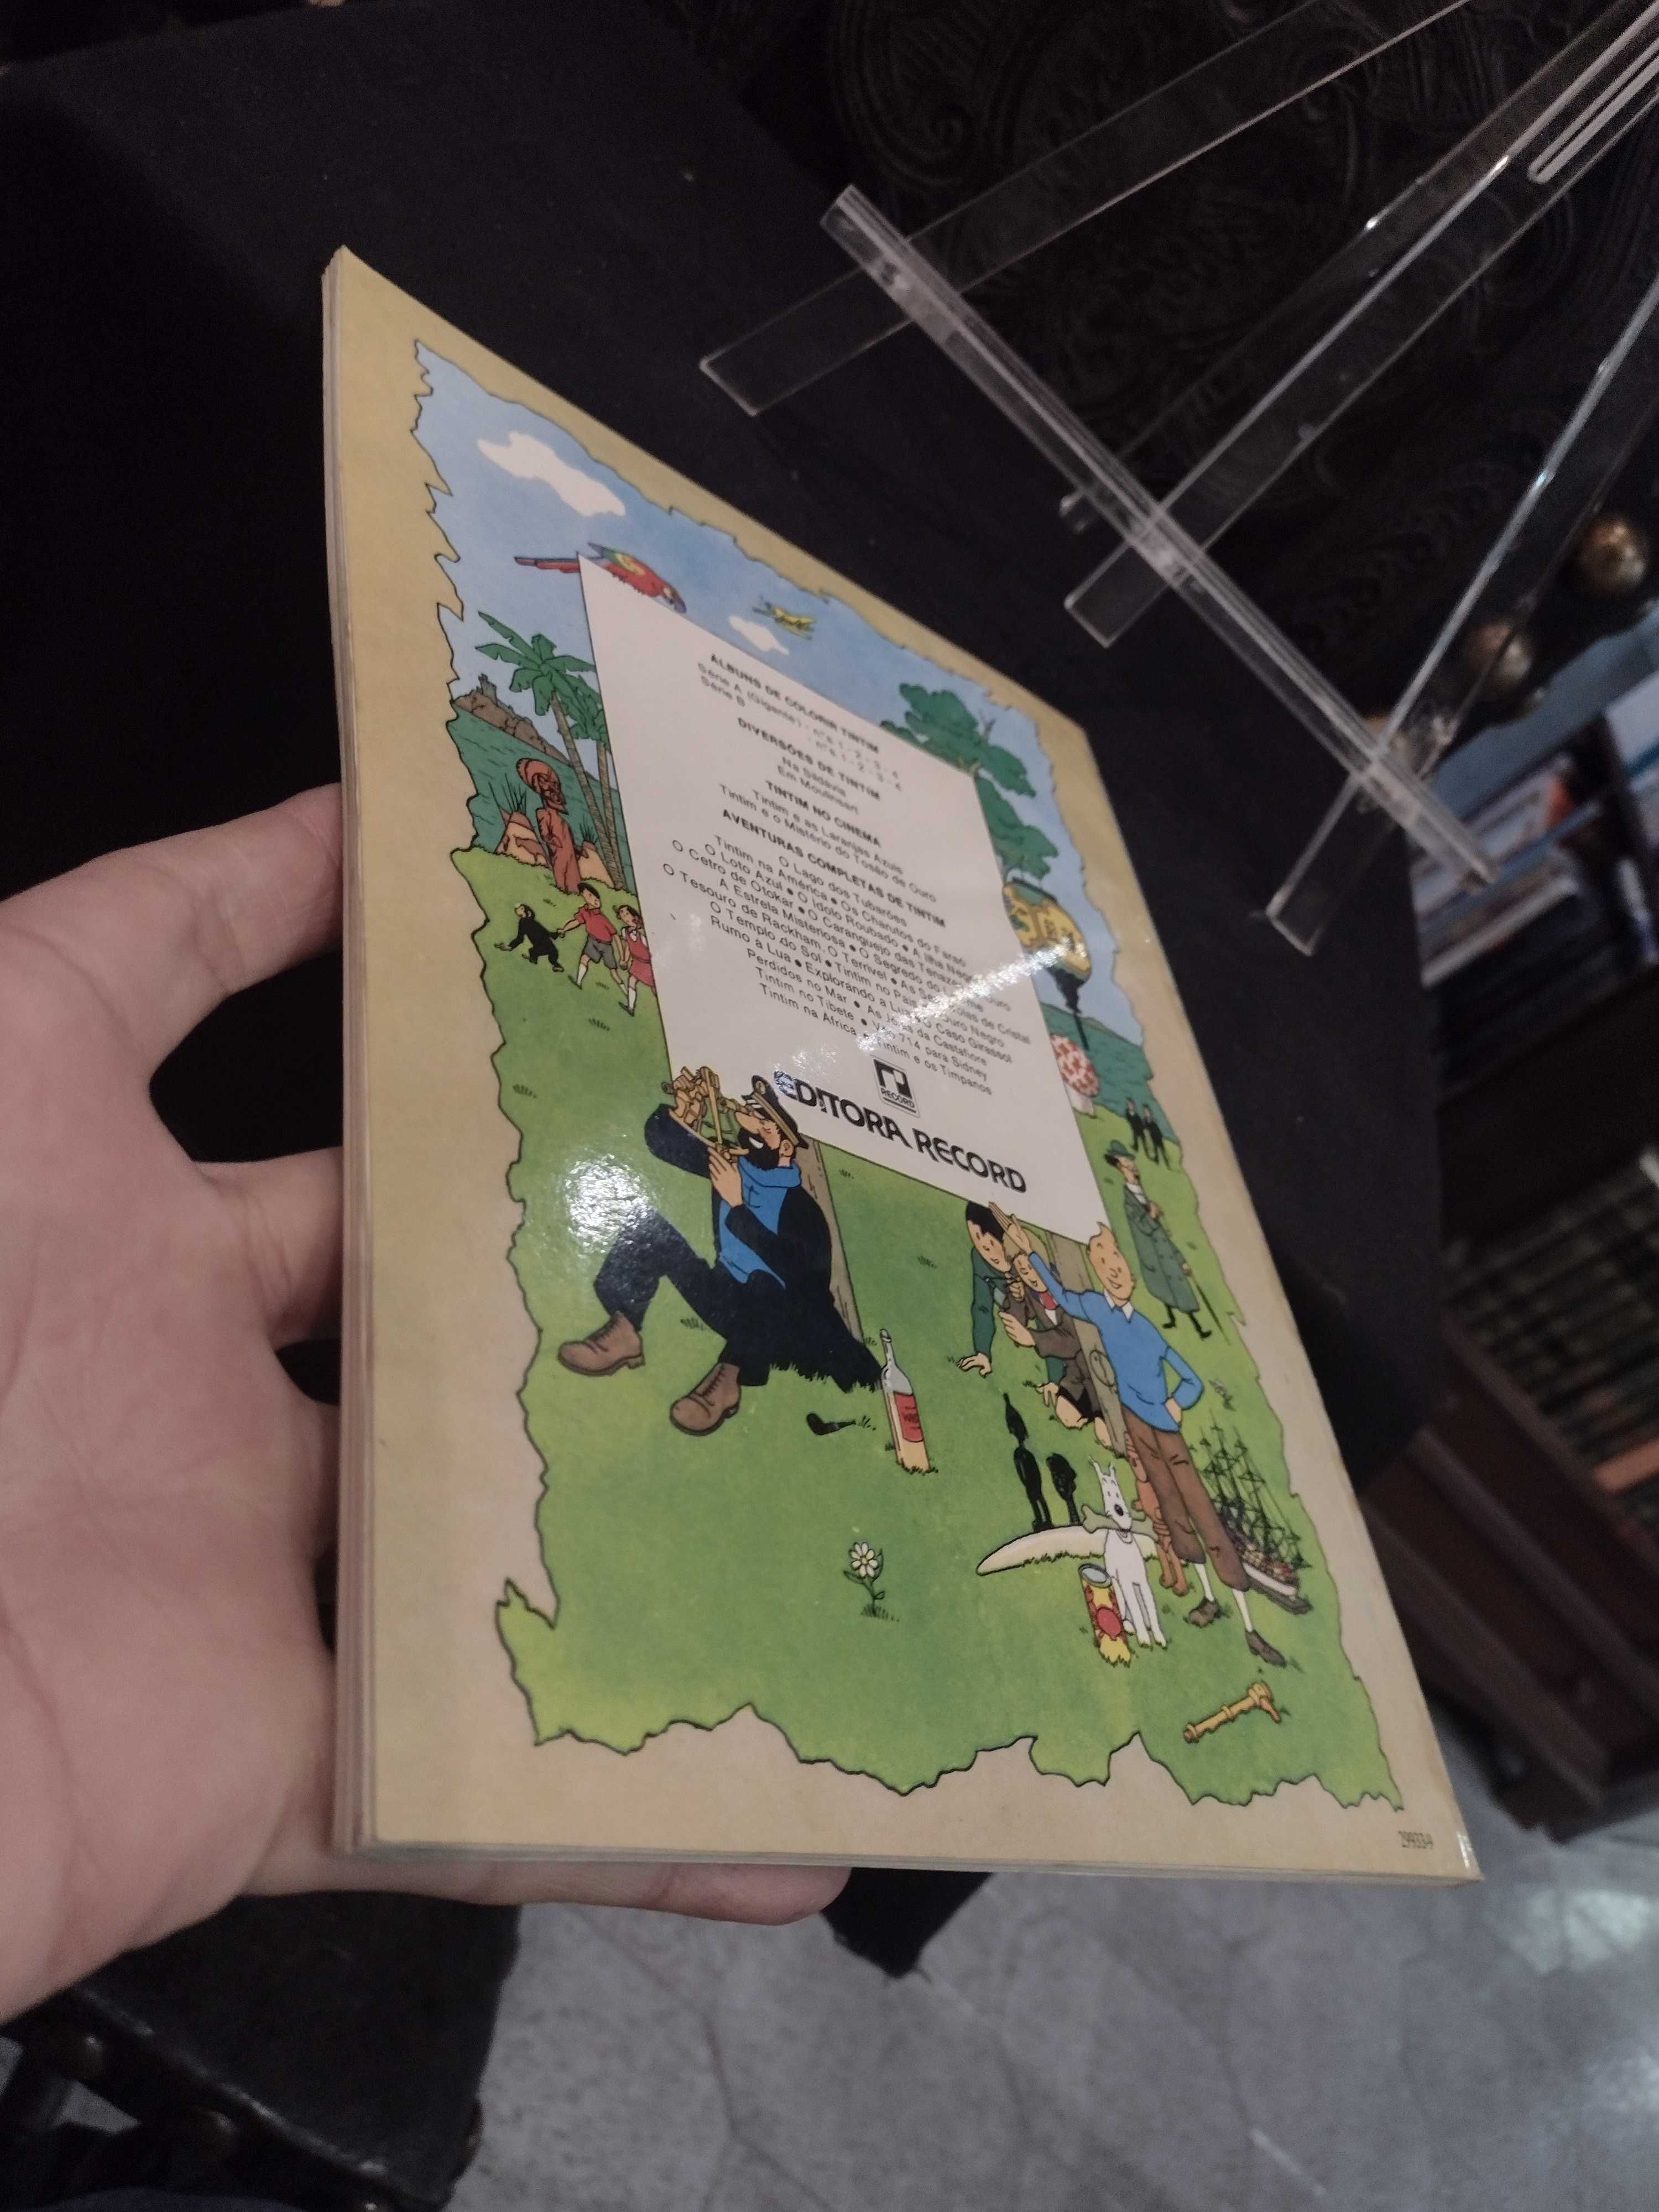 Tintim na América "Record" "Hergé"